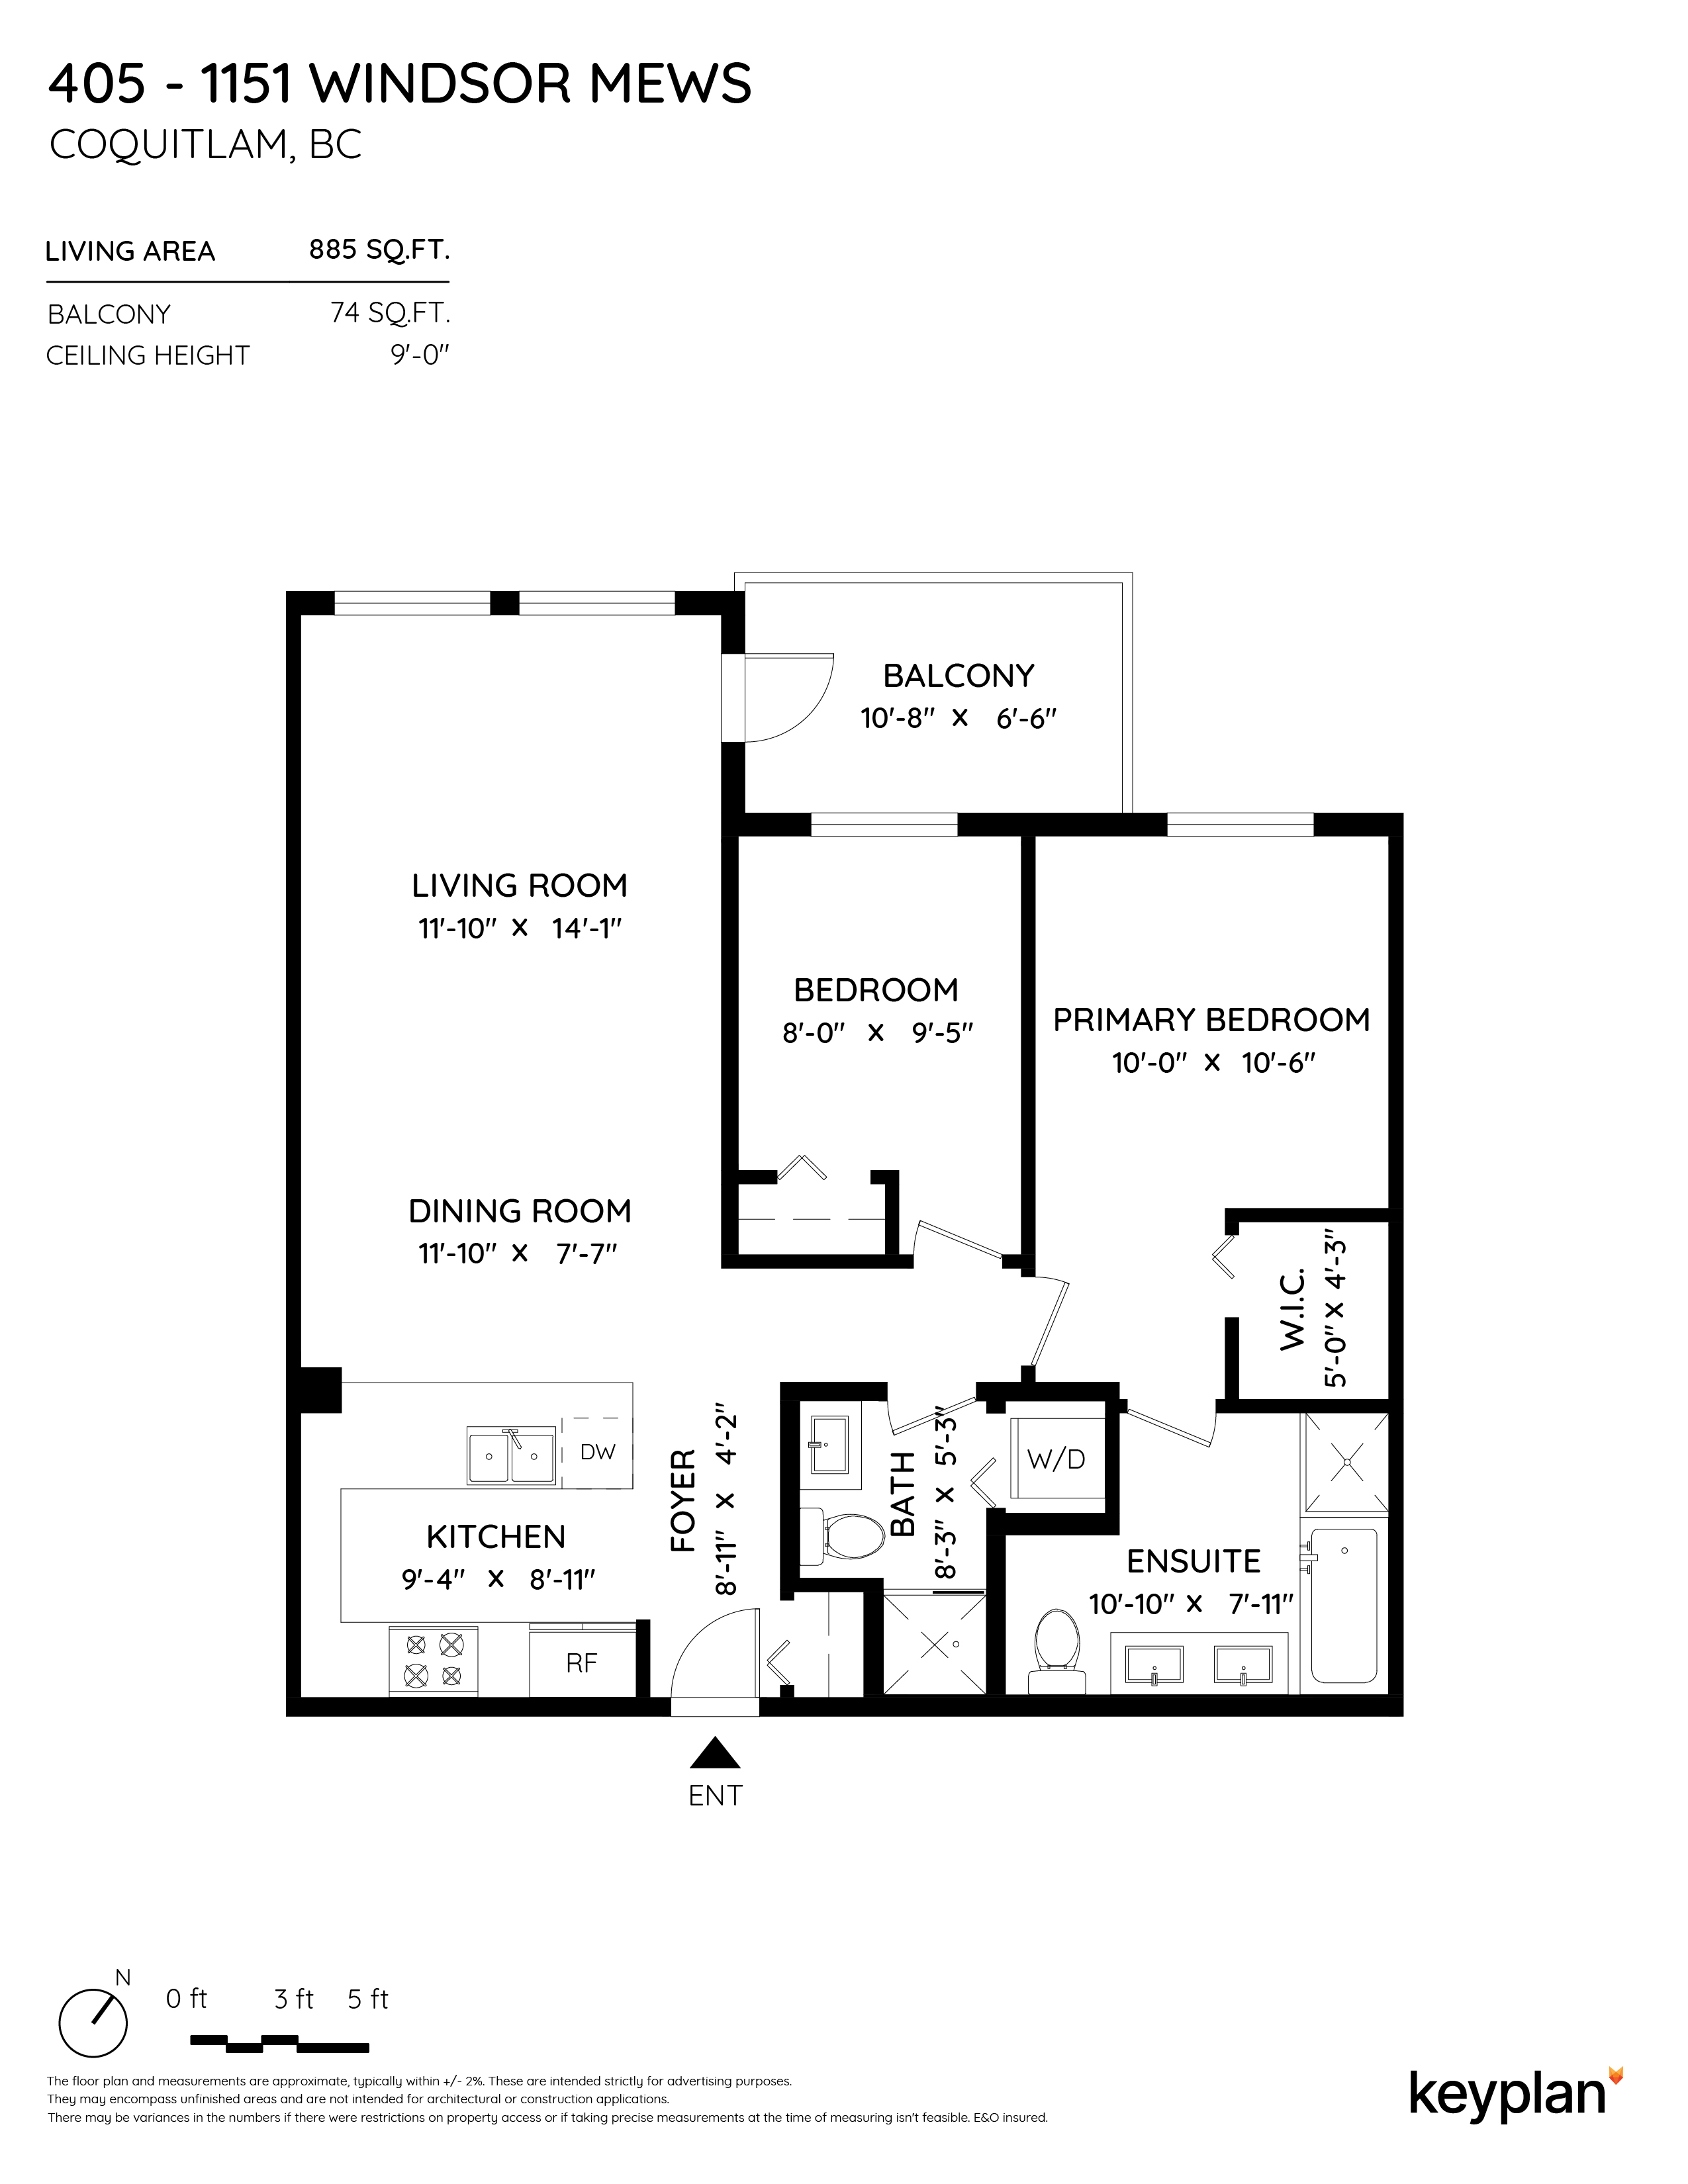 Krista Lapp - Unit 405 - 1151 Windsor Mews, Coquitlam, BC, Canada | Floor Plan 1